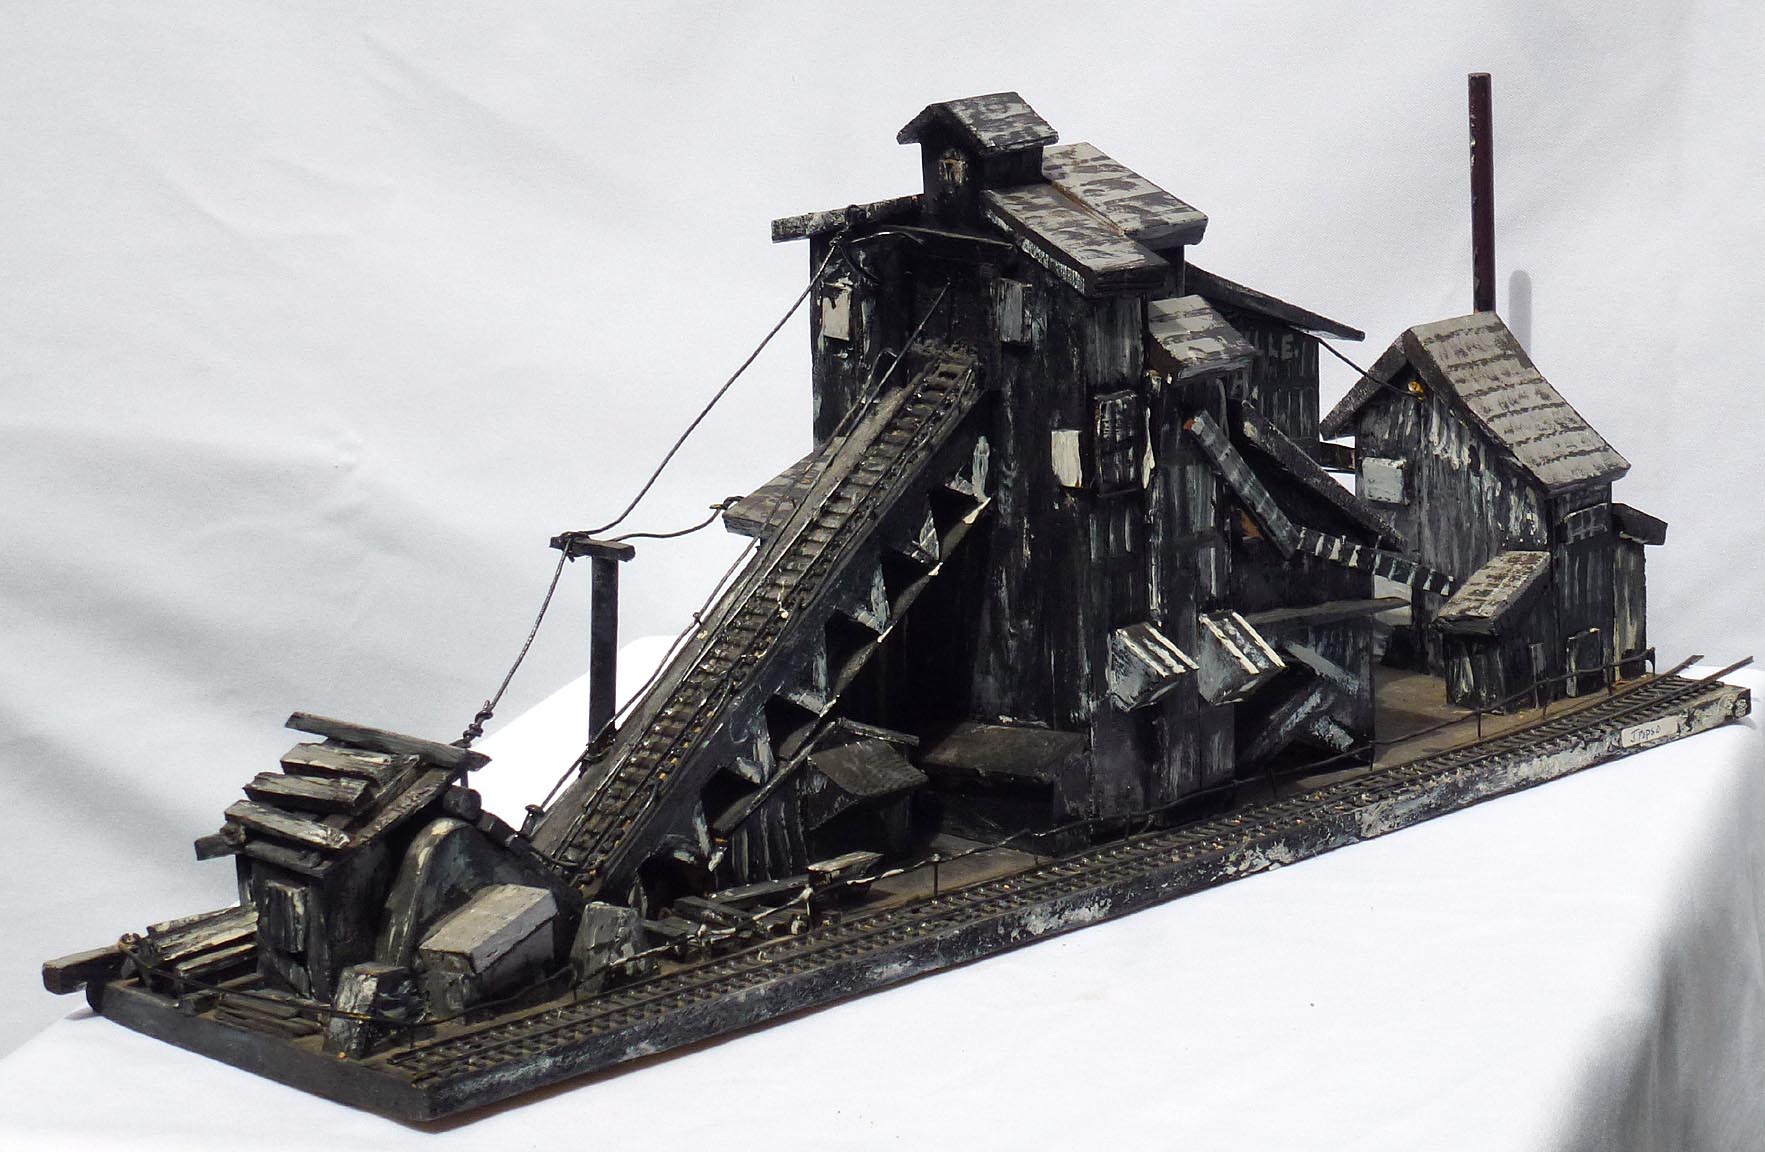 Coal breaker by Jim Popso